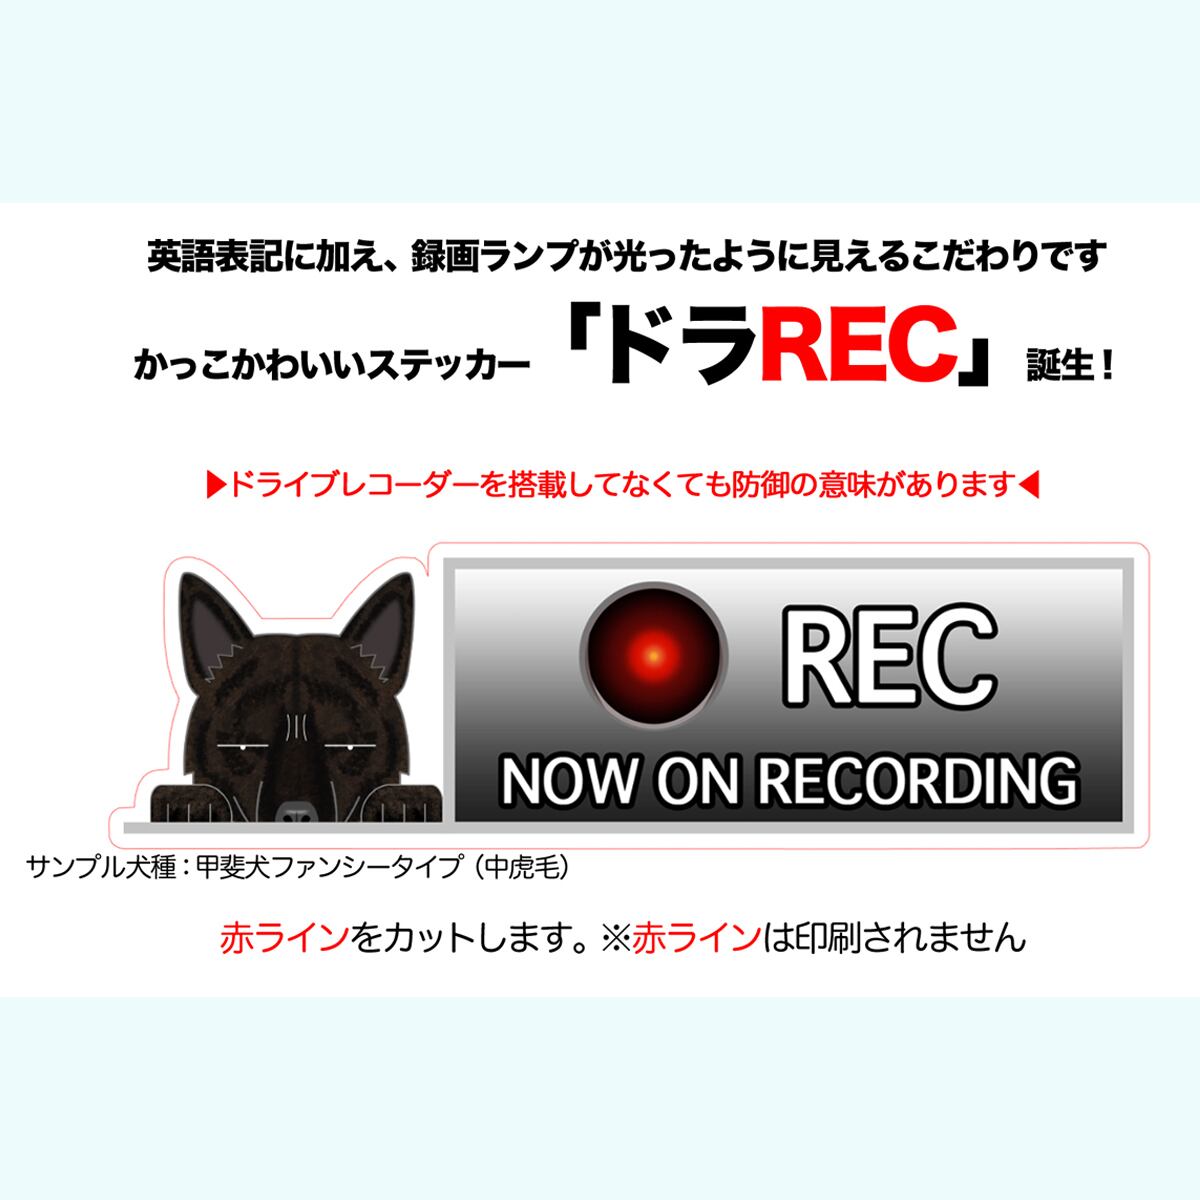 ドライブレコーダー ステッカー カーステッカー グッズ ドラREC ドラレコ 和犬 日本犬 犬 犬ステッカー 甲斐犬 車 車載 録画 録画中  2021年新作入荷 犬